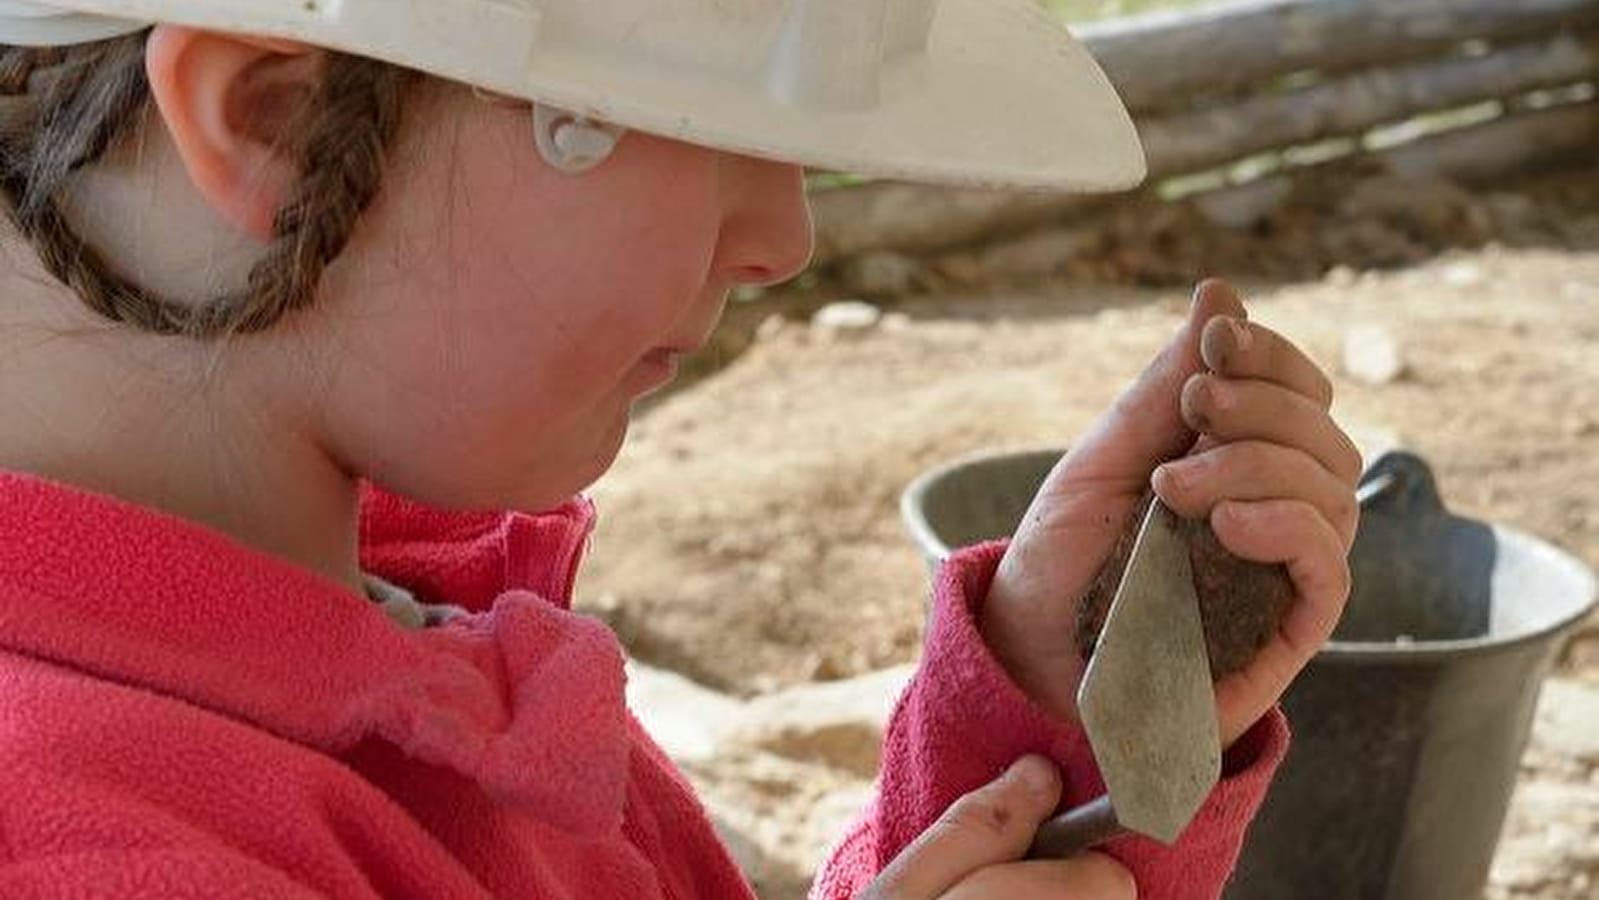 Atelier d'archéologie à Bibracte pour enfants